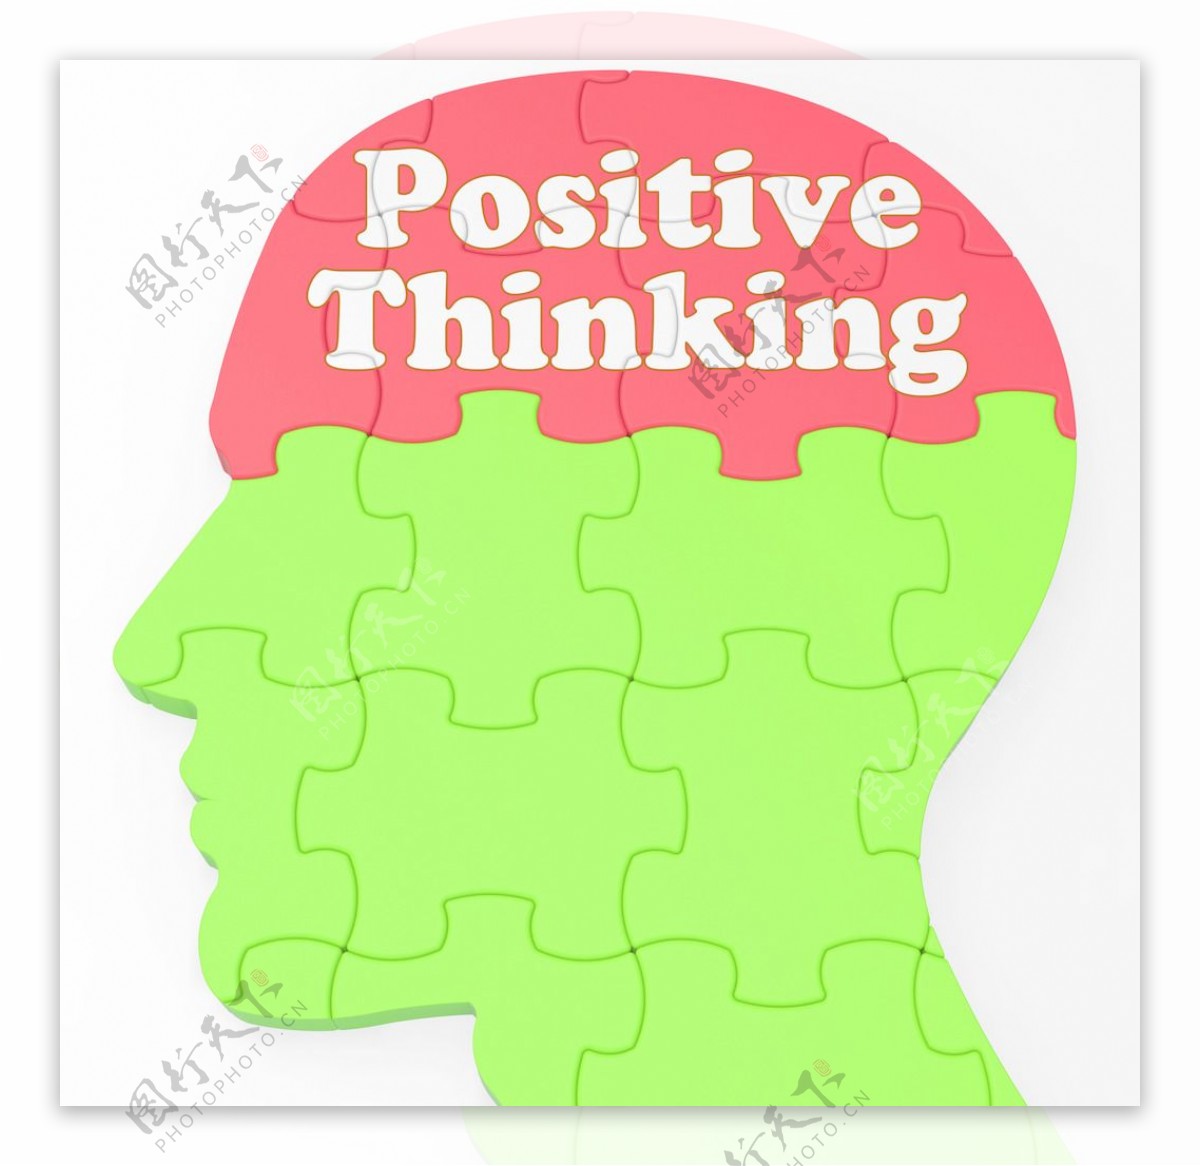 积极的思维表现乐观主义或信仰